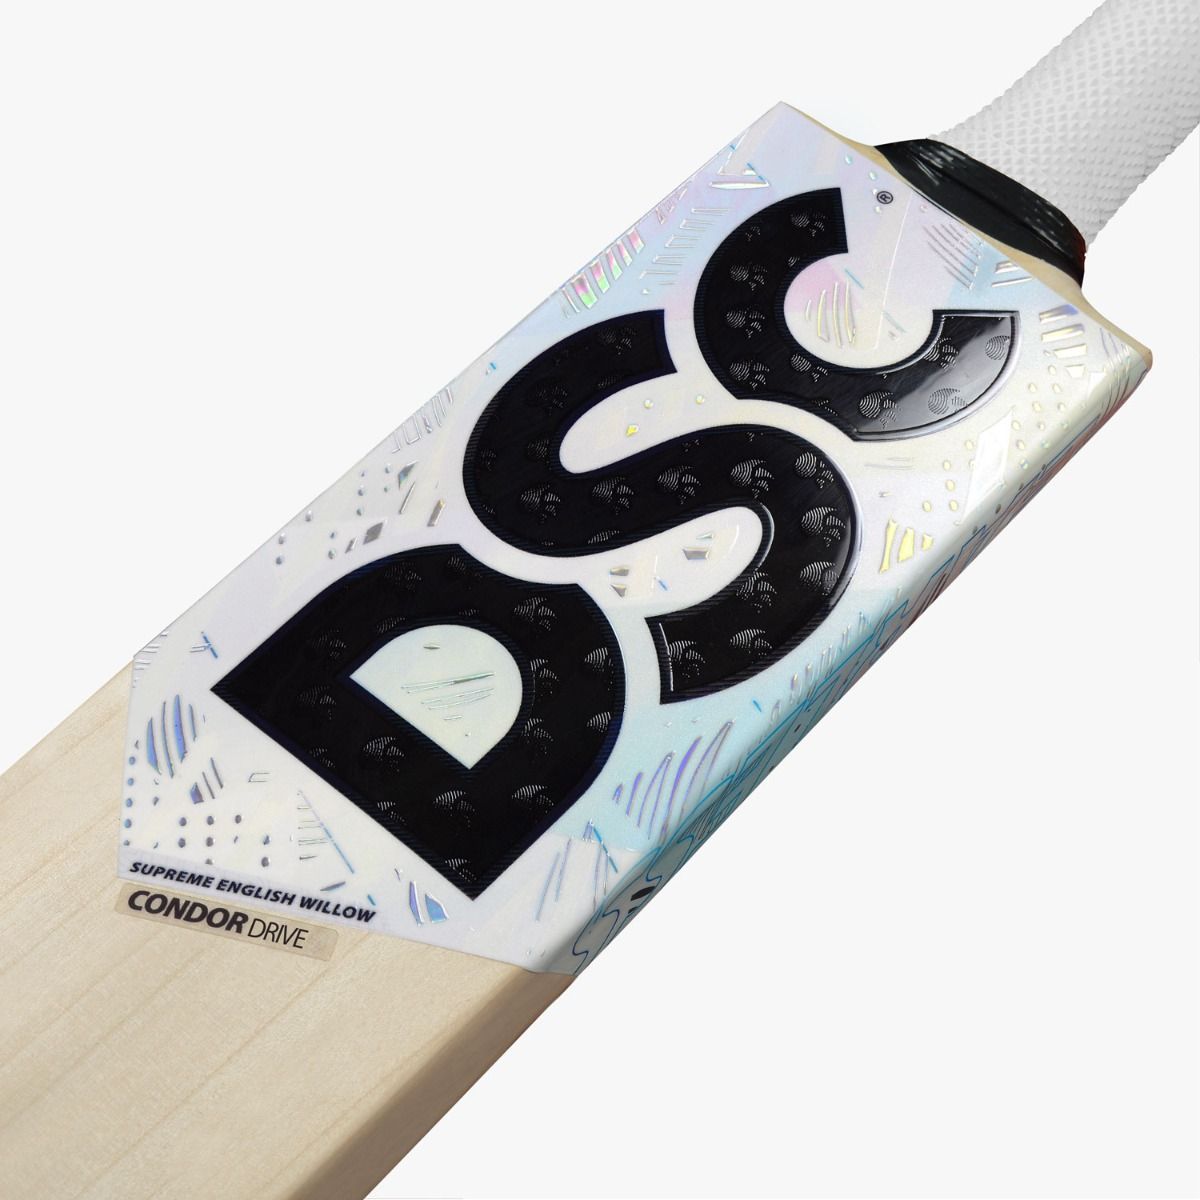 DSC CONDOR Drive Cricket Bat